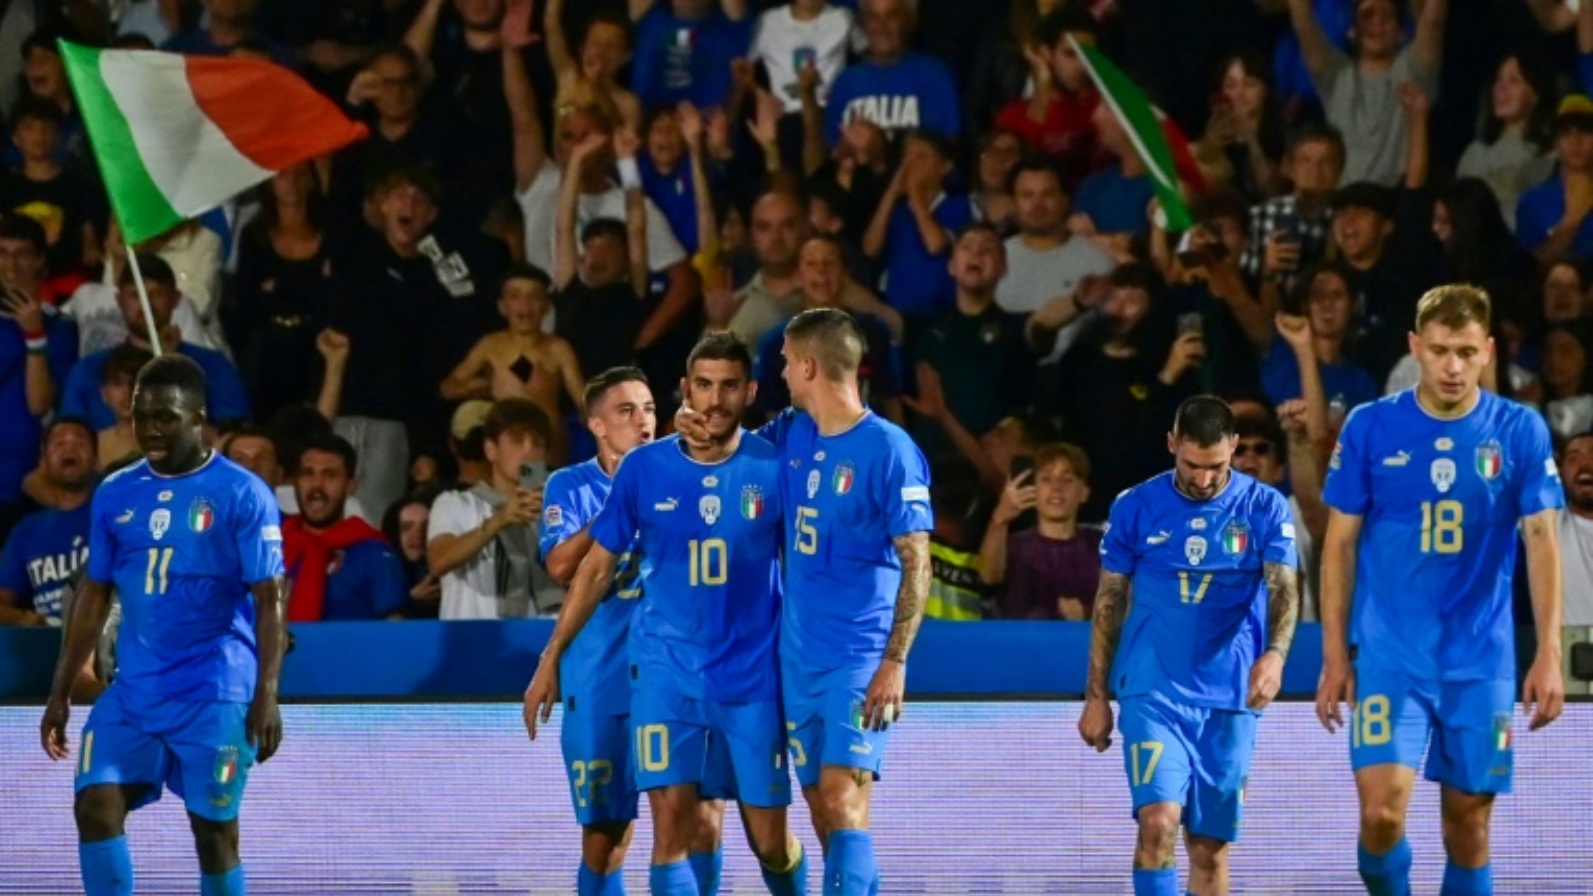 لاعب وسط إيطاليا لورنتسو بيليغريني يحتفل مع زملائه بالهدف الثاني في مرمى المجر خلال الجولة الثانية من مسابقة دوري الأمم الأوروبية على ملعب دينو مانوتسي في تشيزينا في 7 يونيو 2022